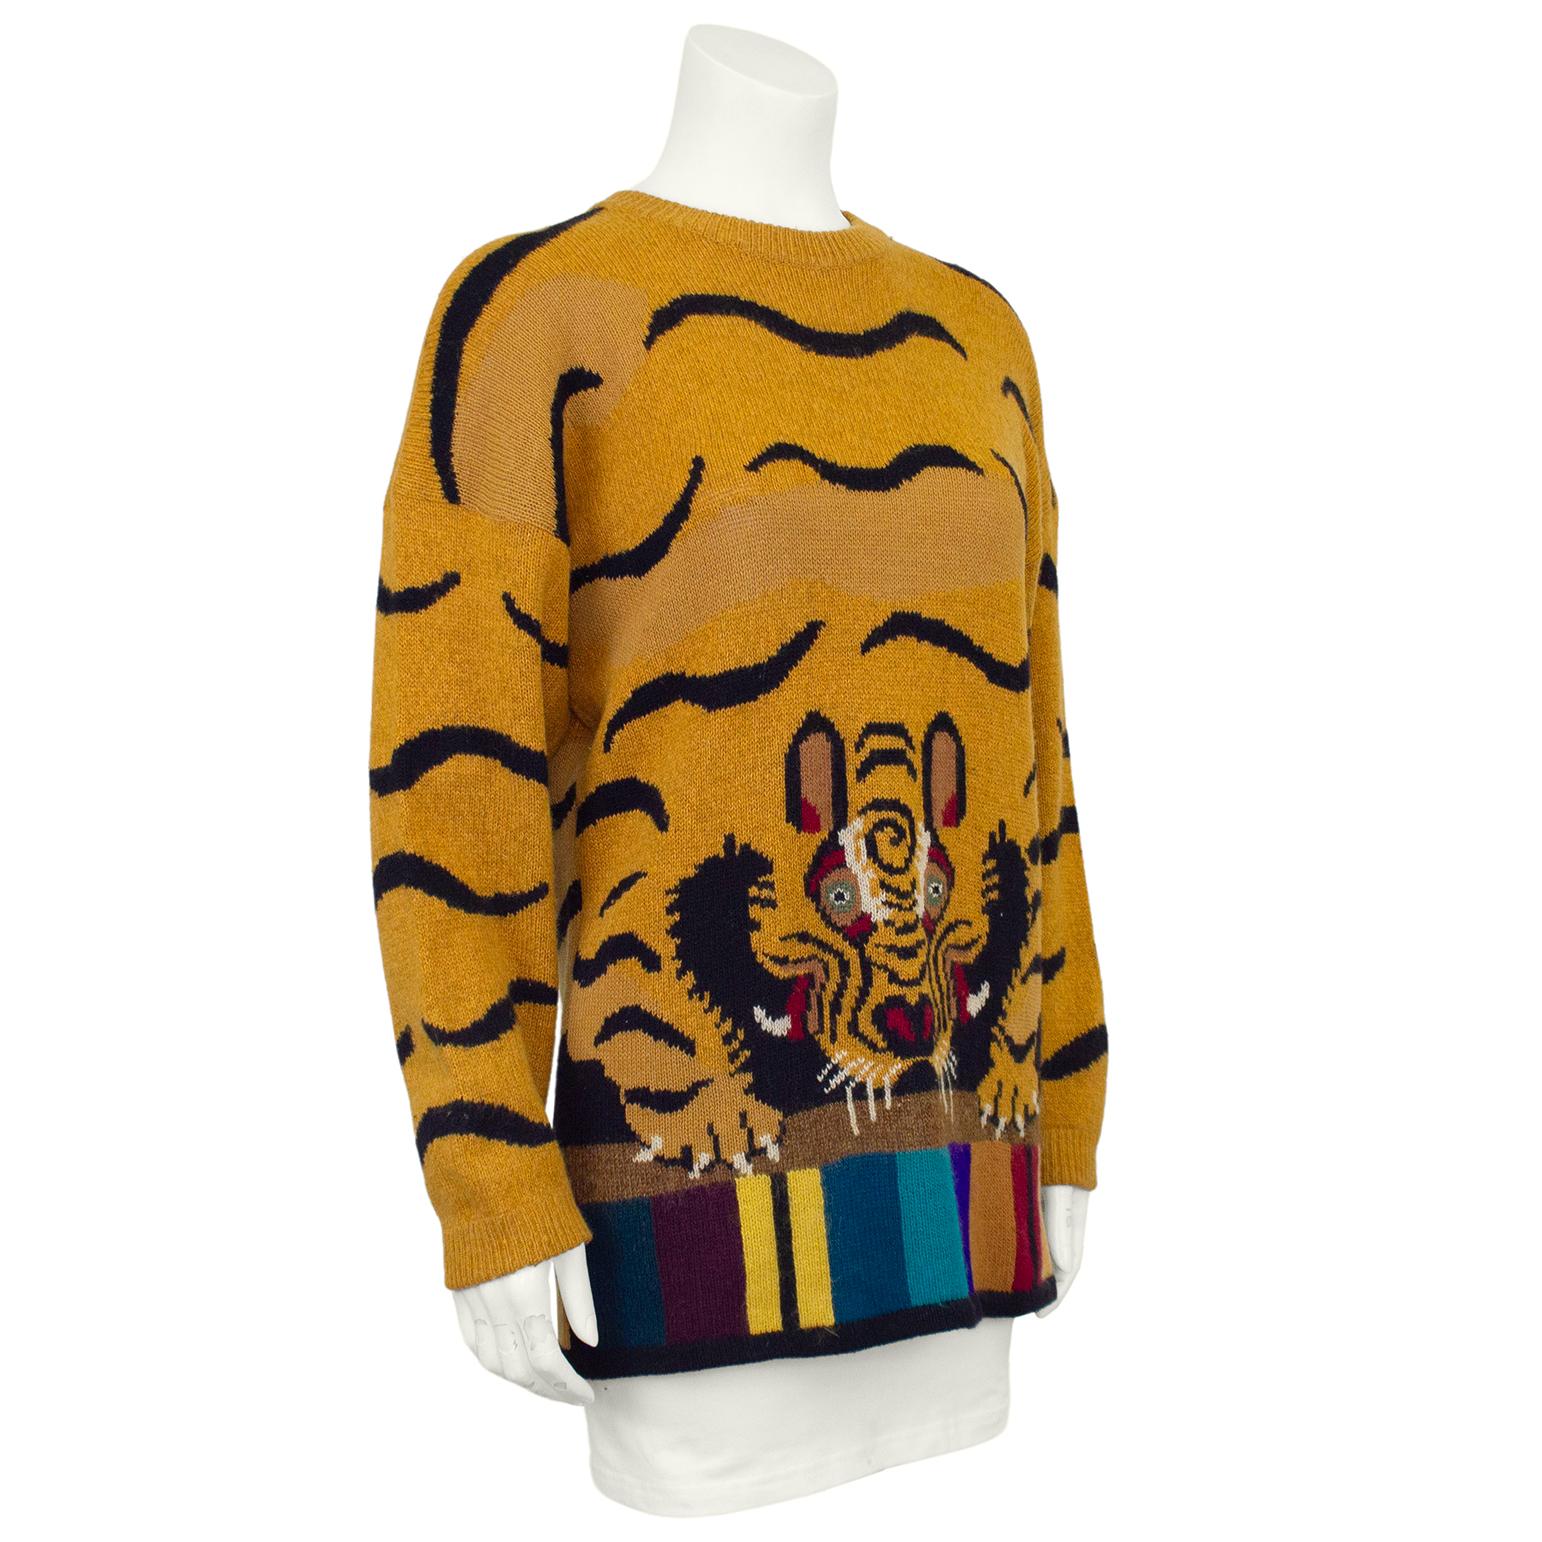 Connu pour ses incroyables tricots à l'effigie d'animaux, ce pull est la pièce ultime des années 1980 de Krizia. Pull oversize à imprimé tigre beige et noir avec visage de tigre détaillé et ourlet rayé multicolore. Encolure et poignets côtelés,